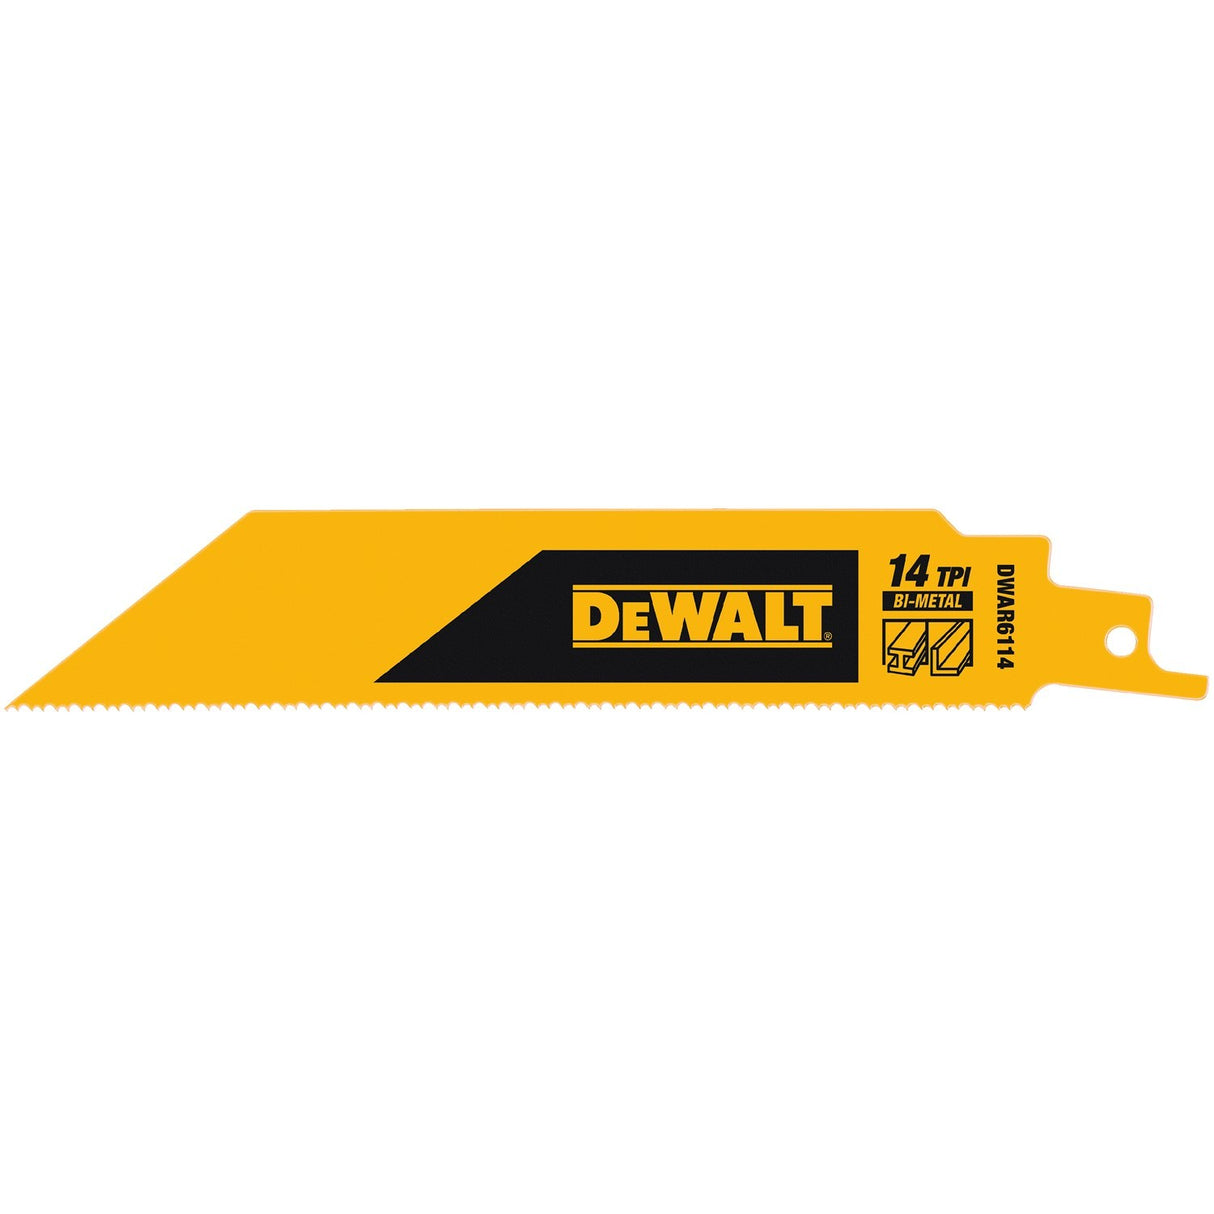 DeWalt DWAR6114N25